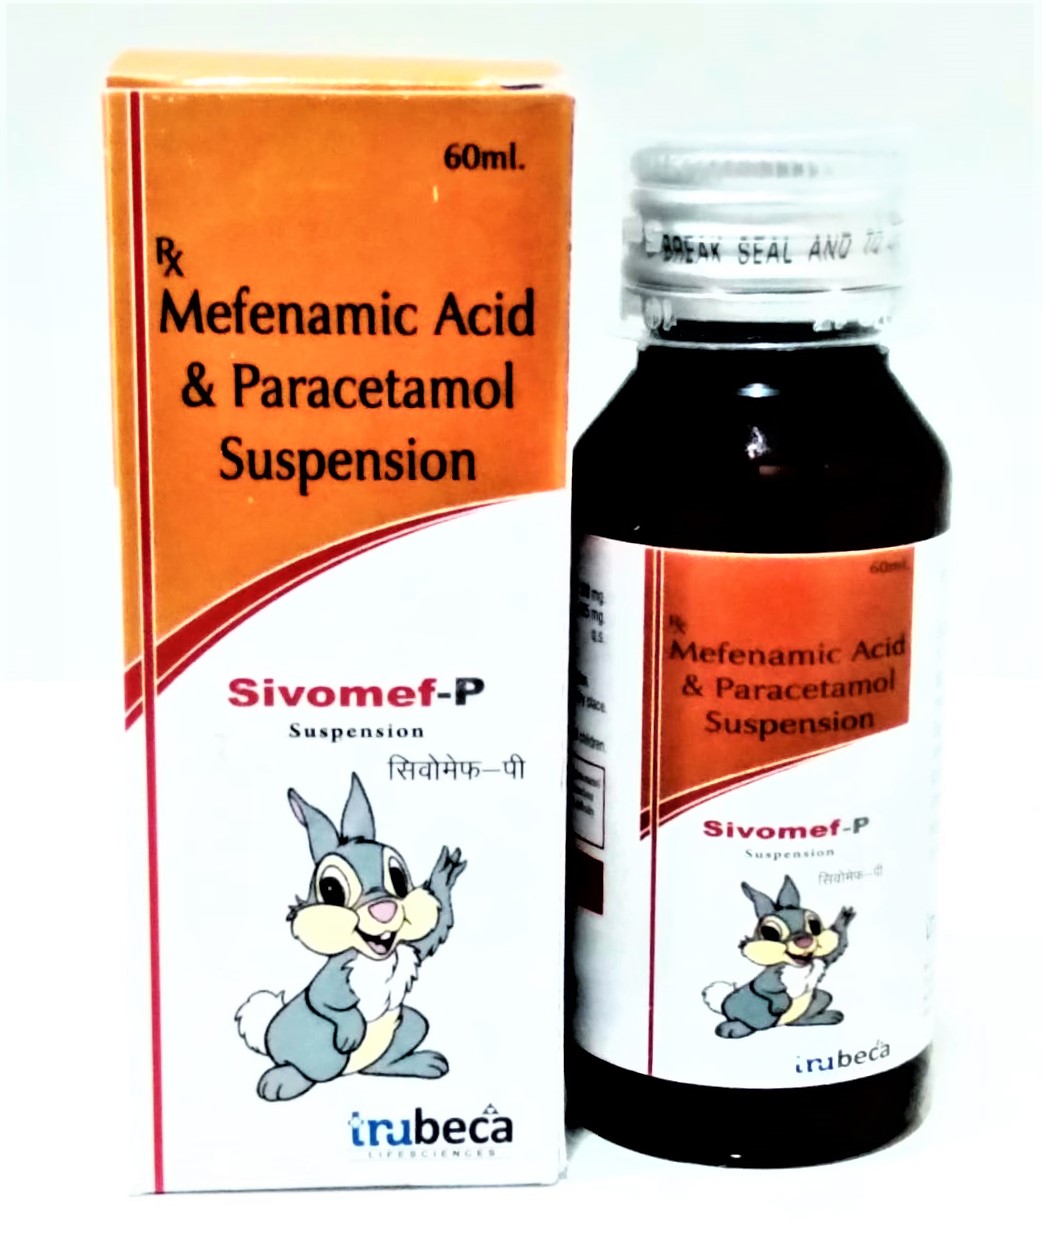 mefenamic acid 50mg + paracetamol 125mg suspension with monocarton